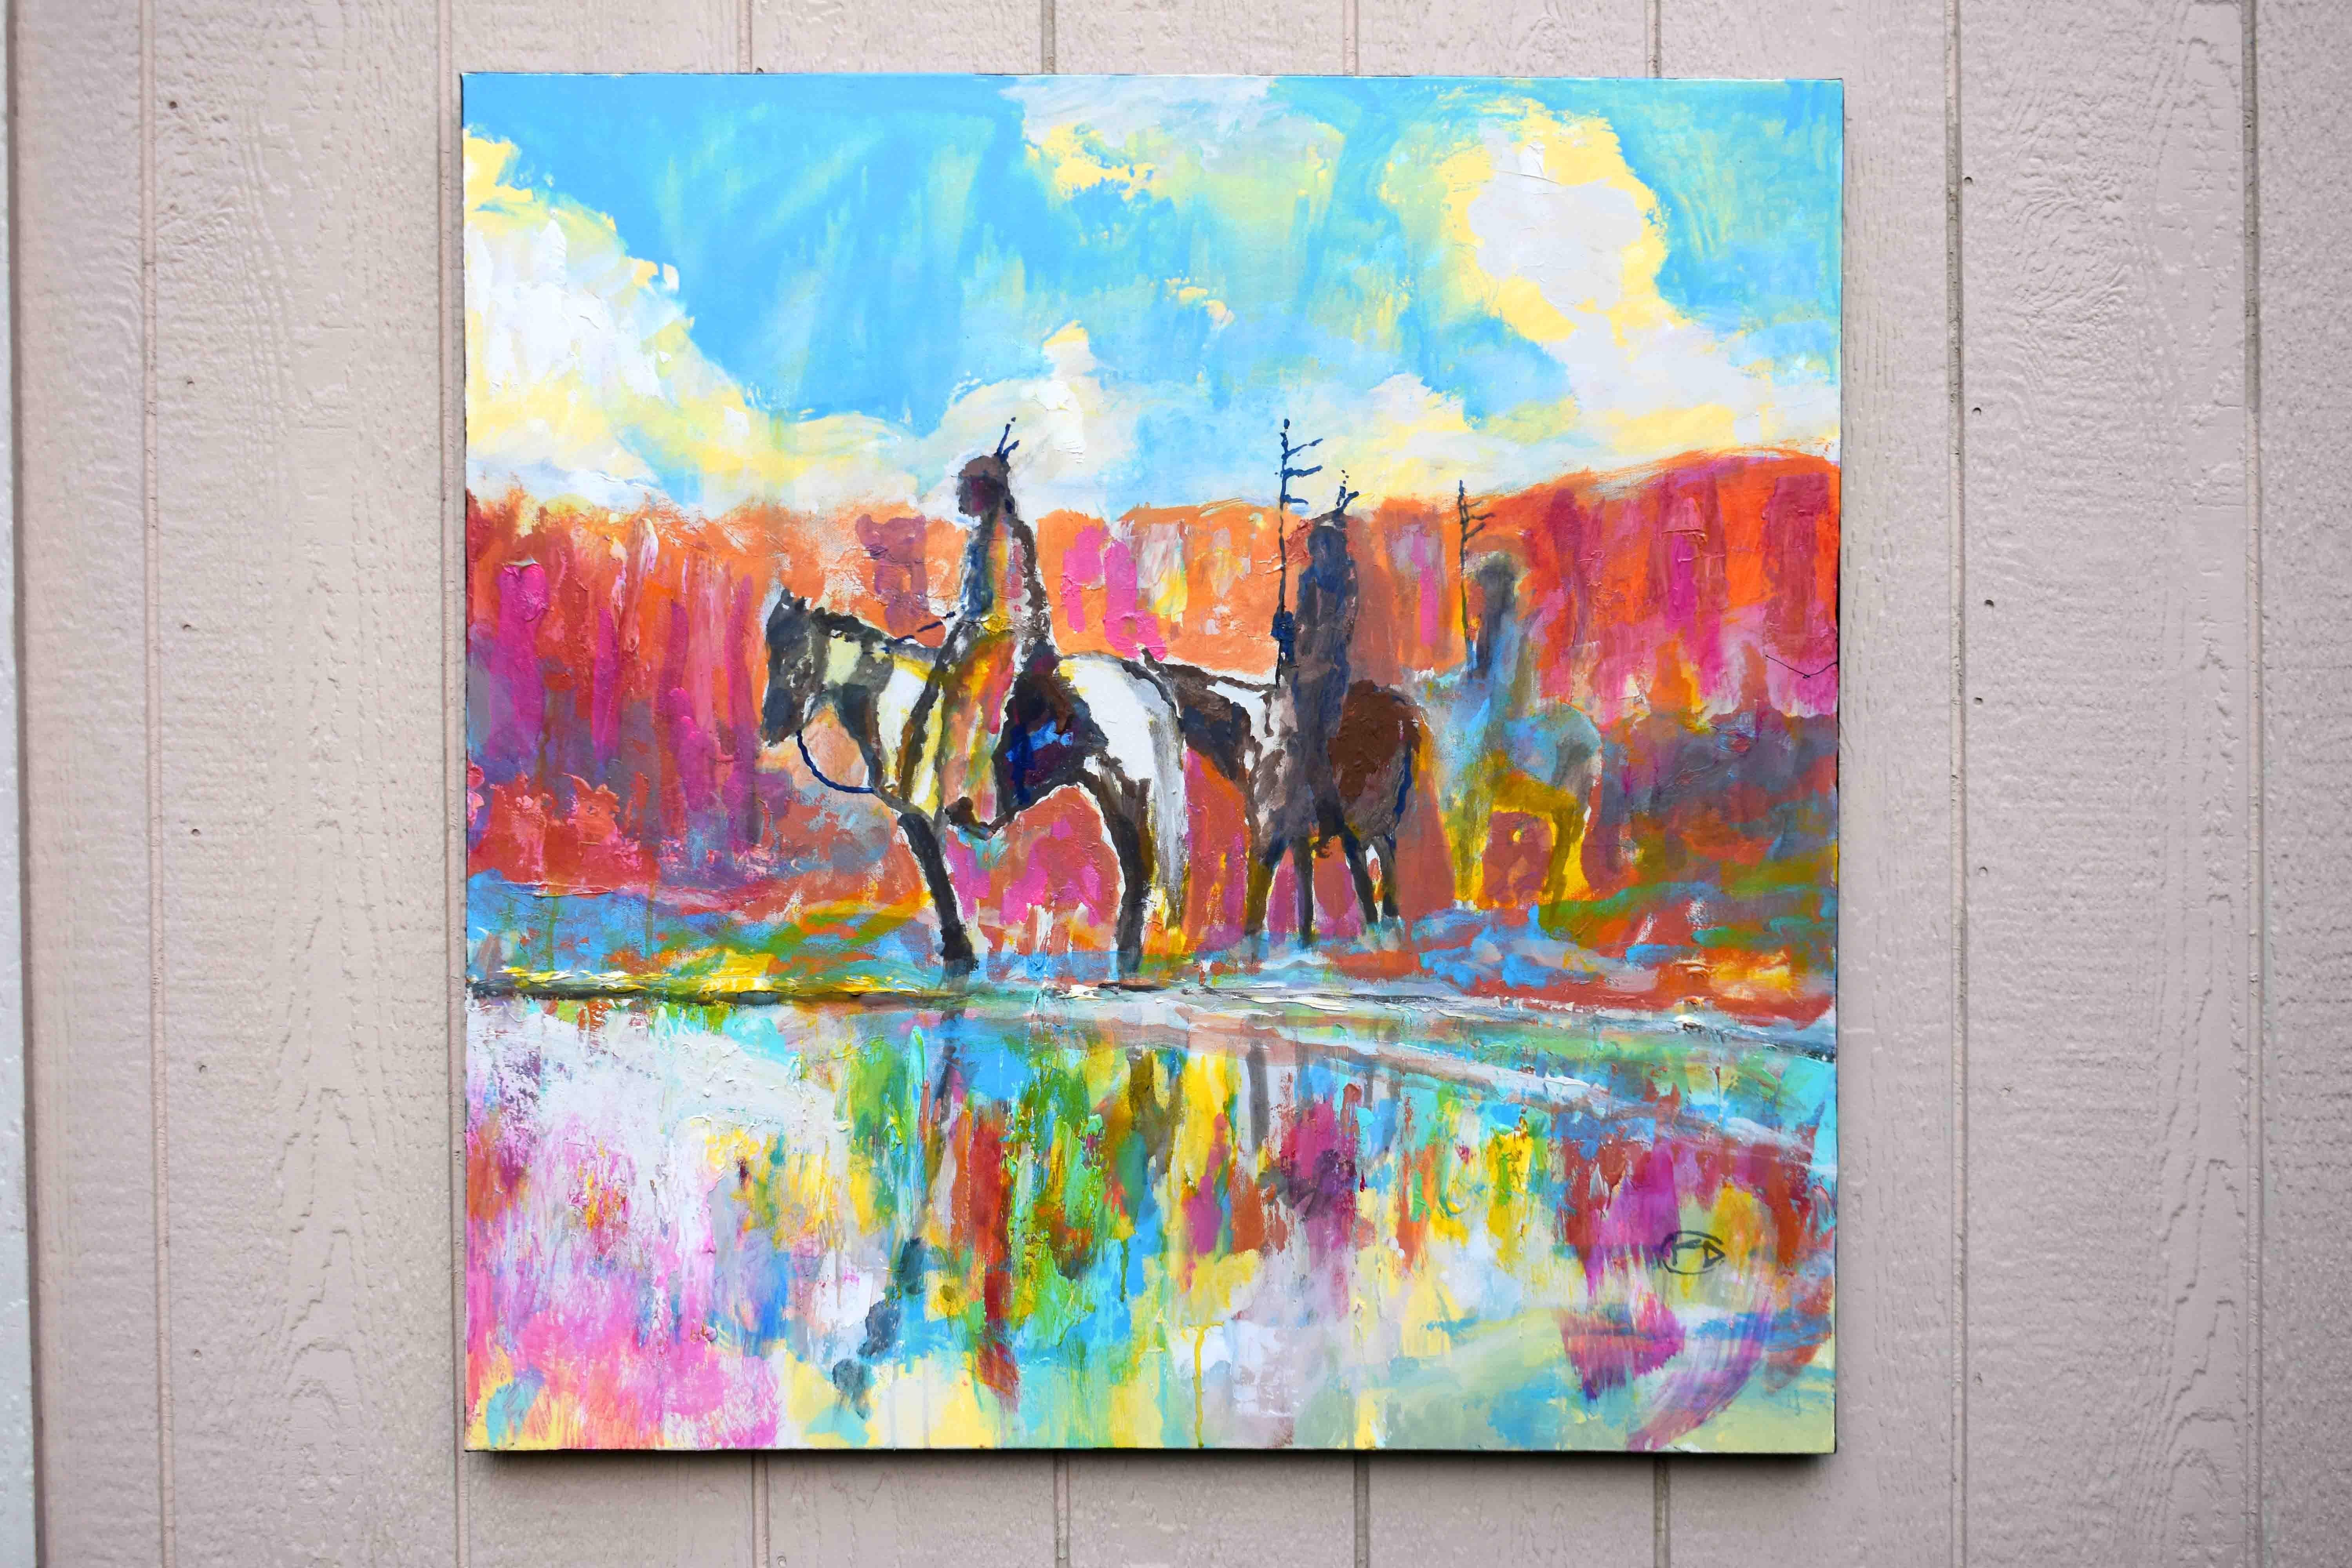 <p>Kommentare des Künstlers<br>Der Künstler Kip Decker porträtiert eine ergreifende Szene mit amerikanischen Ureinwohnern zu Pferd. Die Gruppe erkundet eine flache Wasserquelle nach einem kürzlichen Regen. Die schillernden Farbtöne des Gemäldes